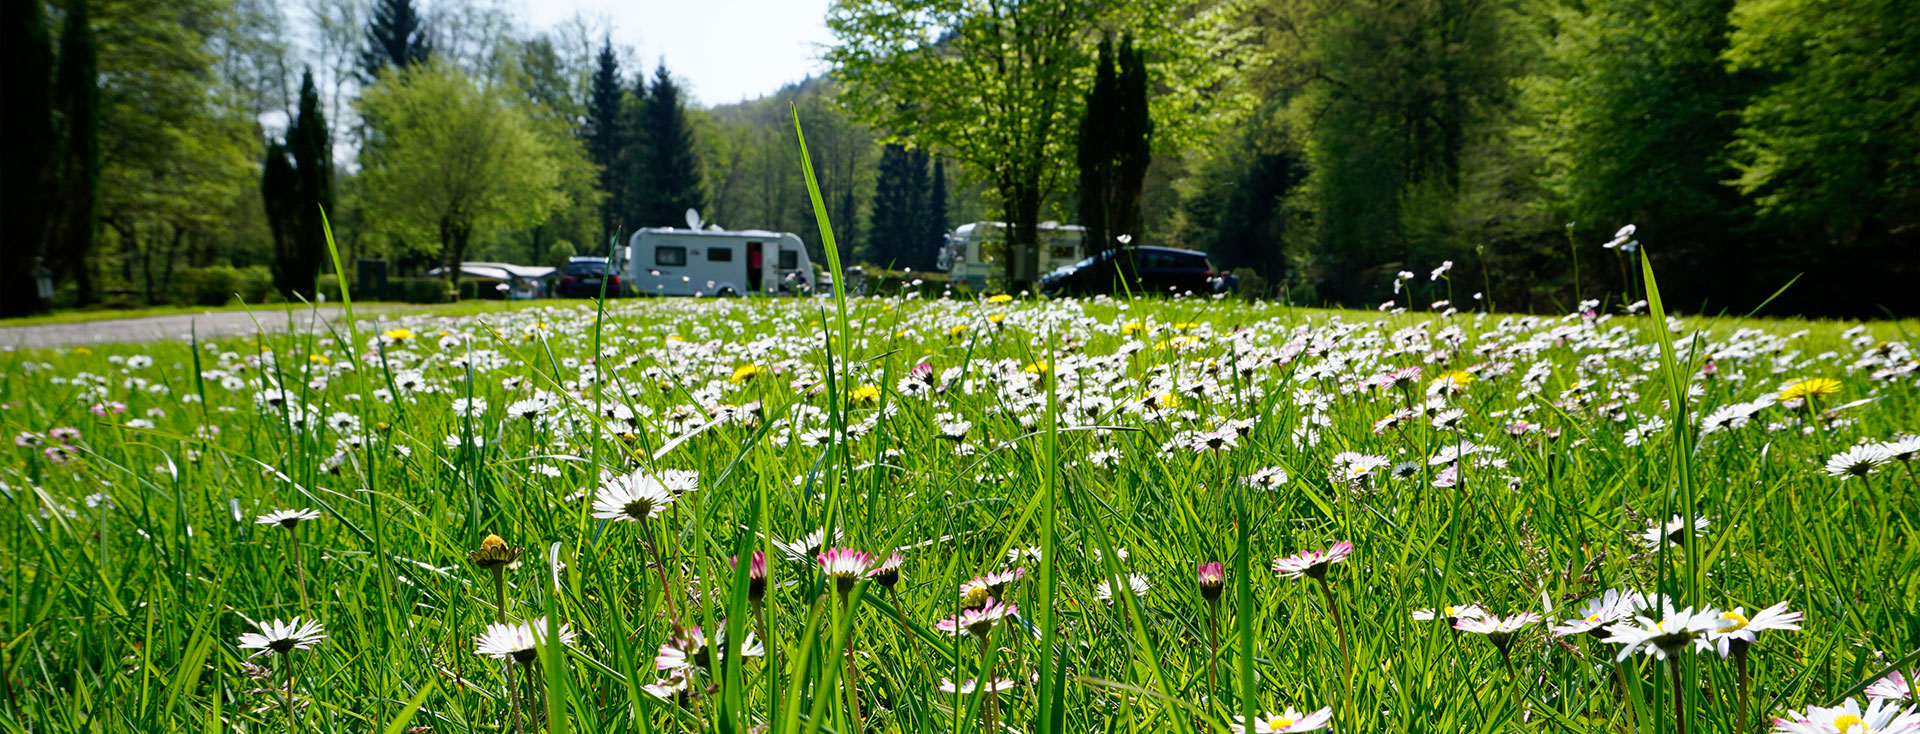 Wiese mit Wohnwagen Odenwald-Camping-Park